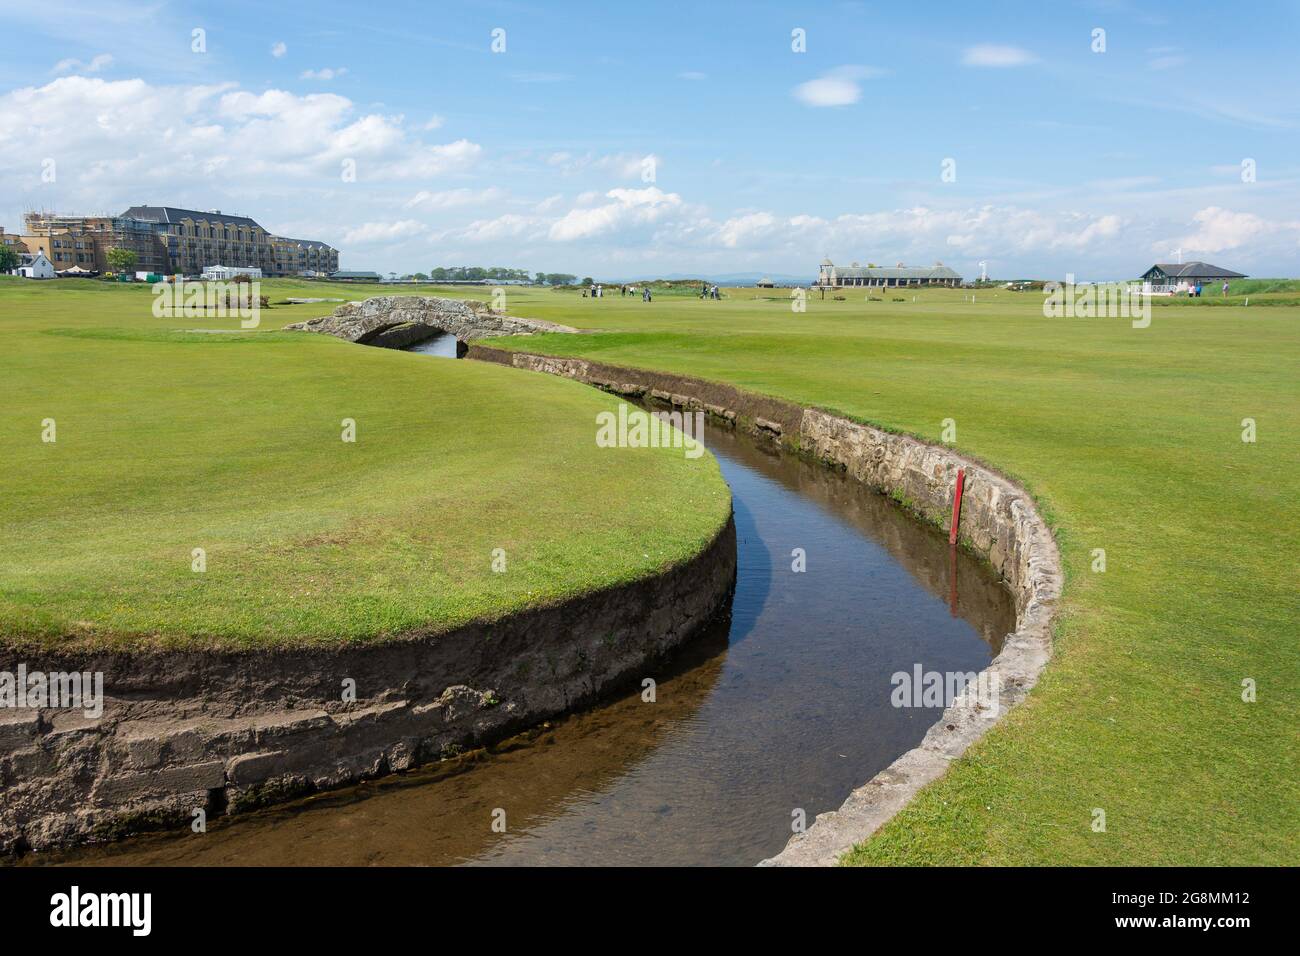 Le pont Swilcan sur le 18e fairway, le Old course, le Royal and Ancient Golf Club de St Andrews, St Andrews, Fife, Écosse, Royaume-Uni Banque D'Images